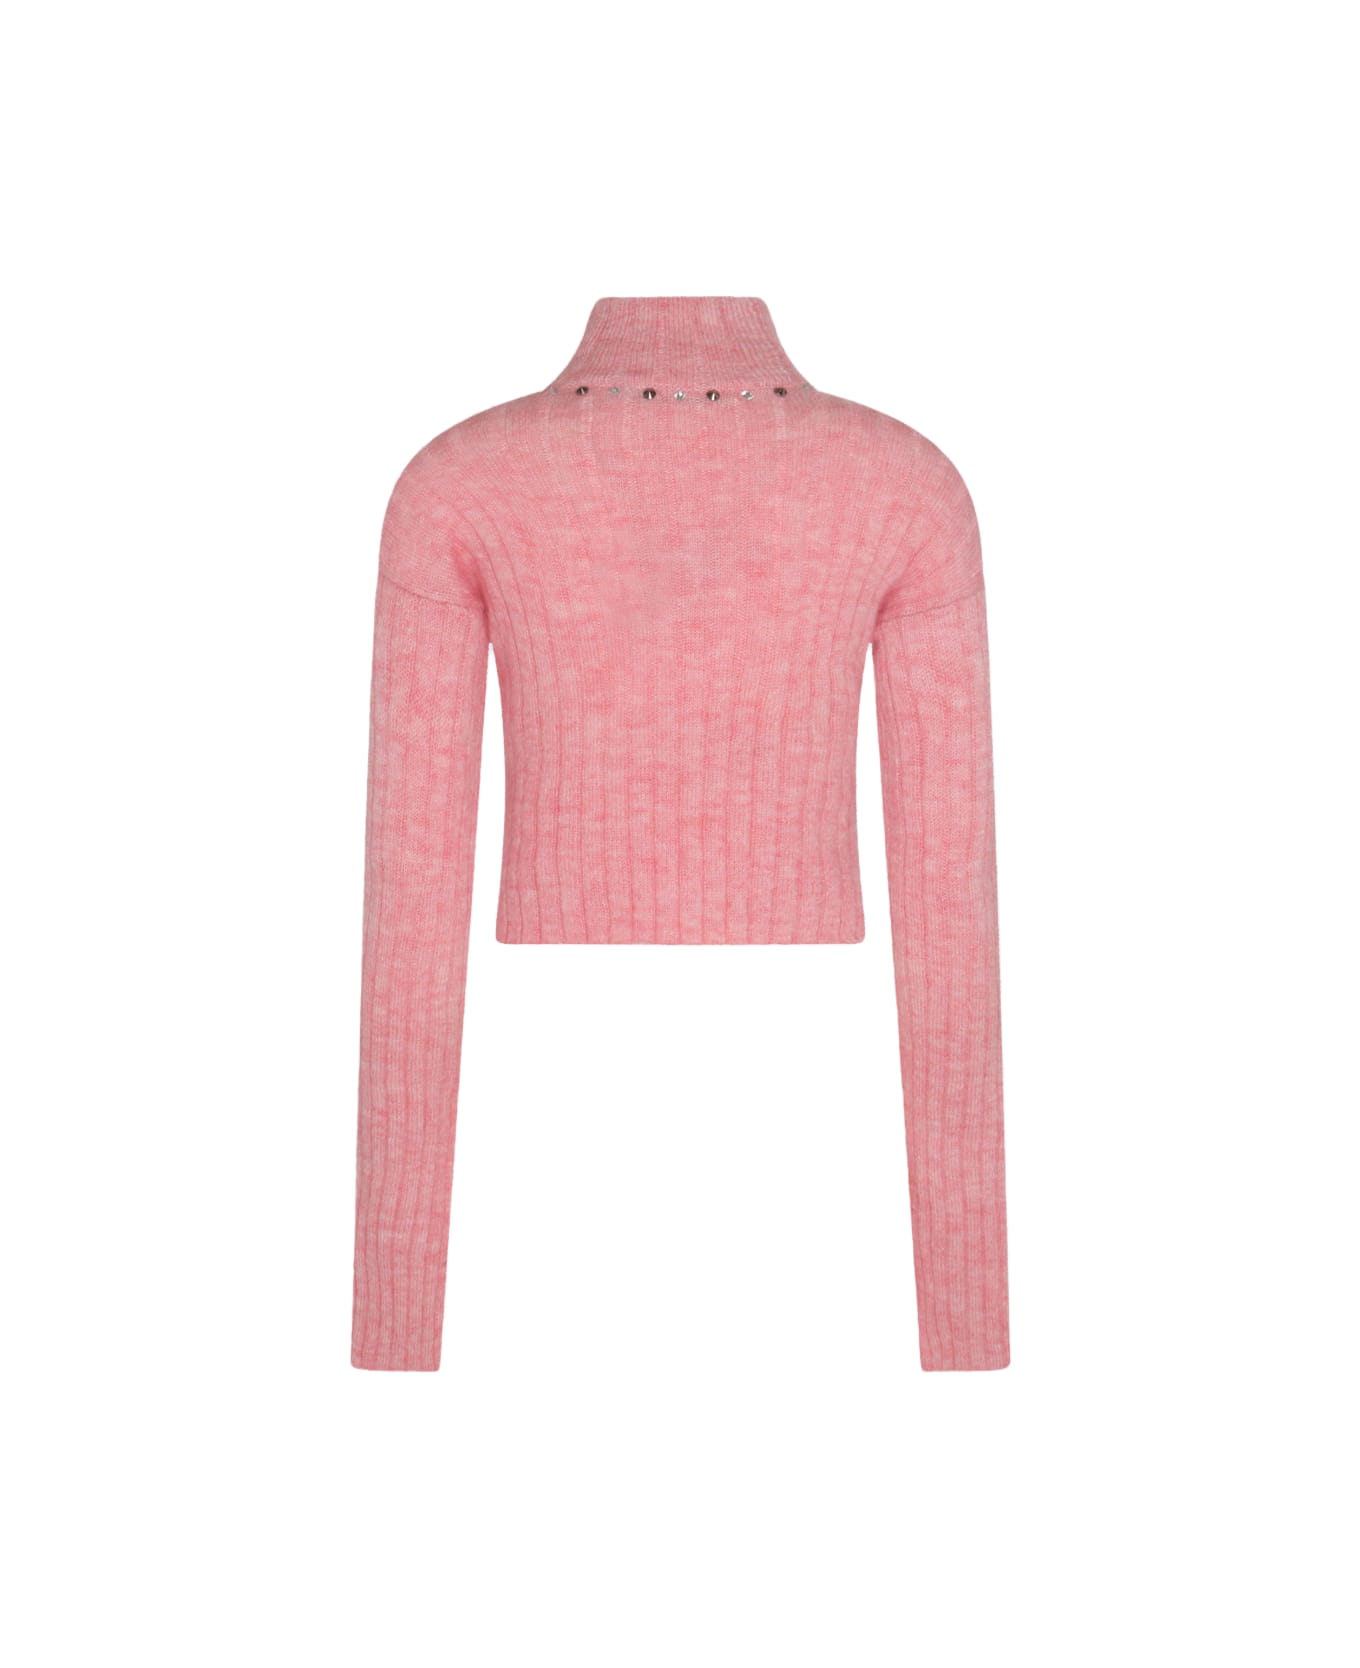 Alessandra Rich Pink Wool Blend Jumper - PINK MELANGE